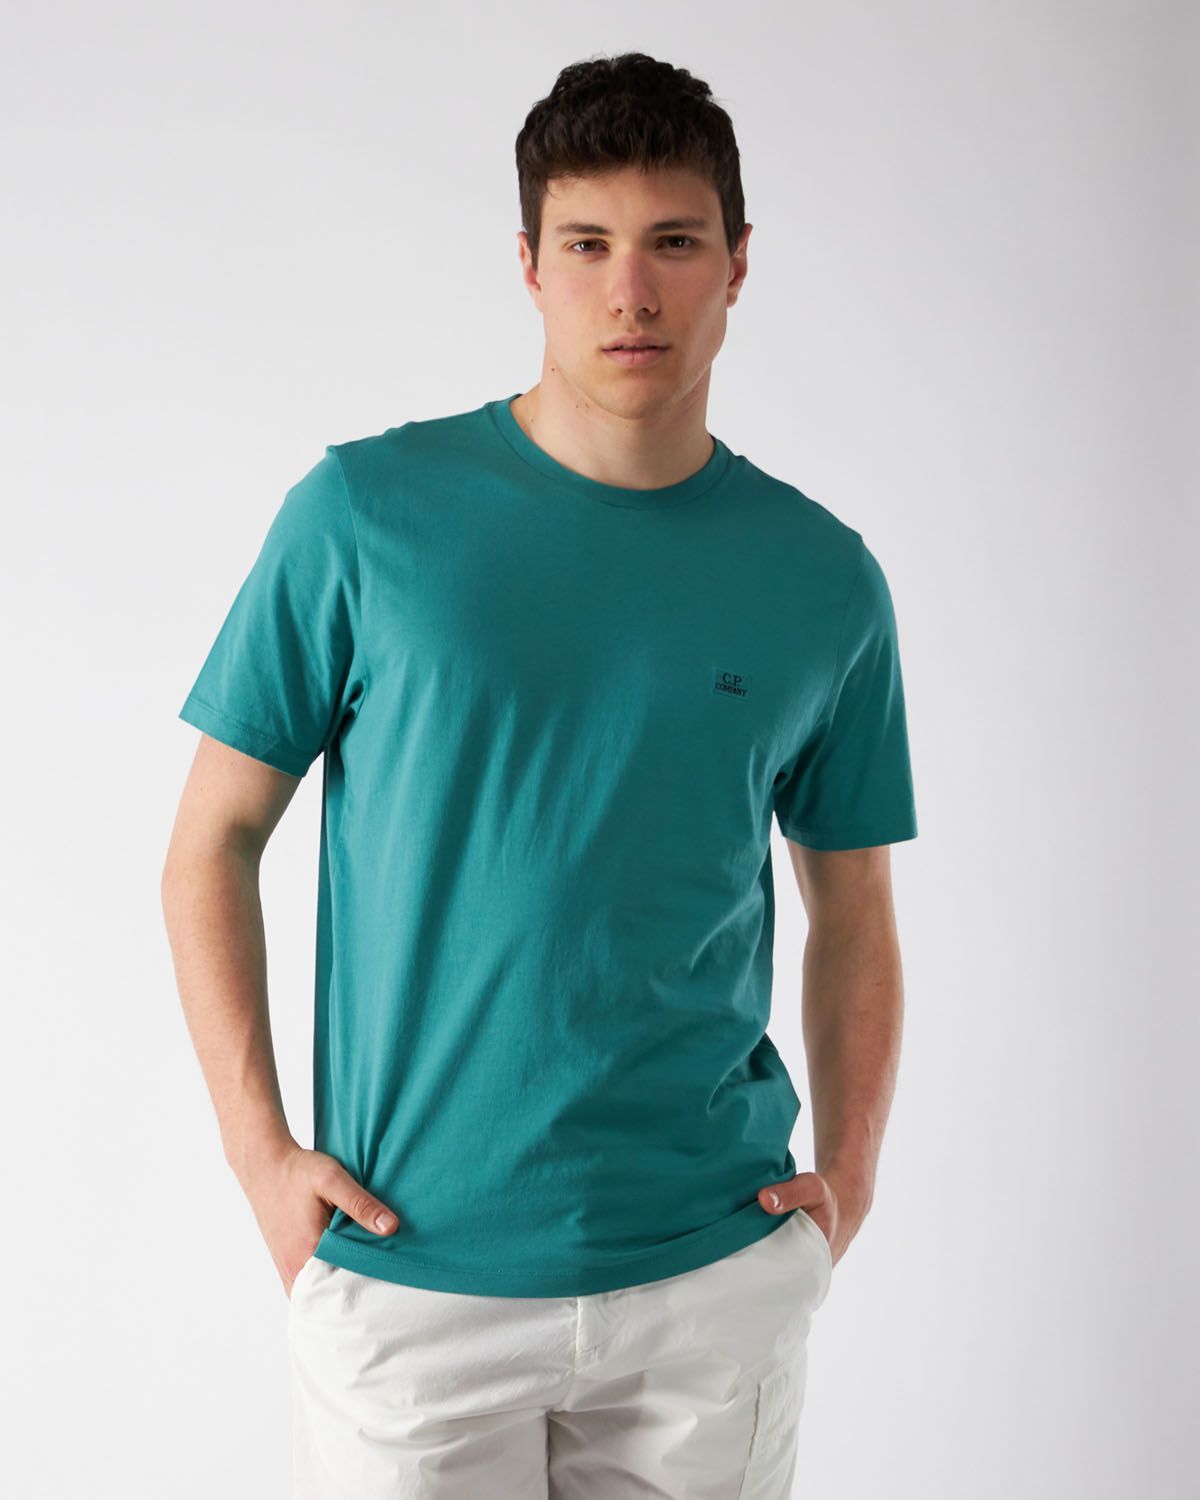 Green Jersey T-Shirt